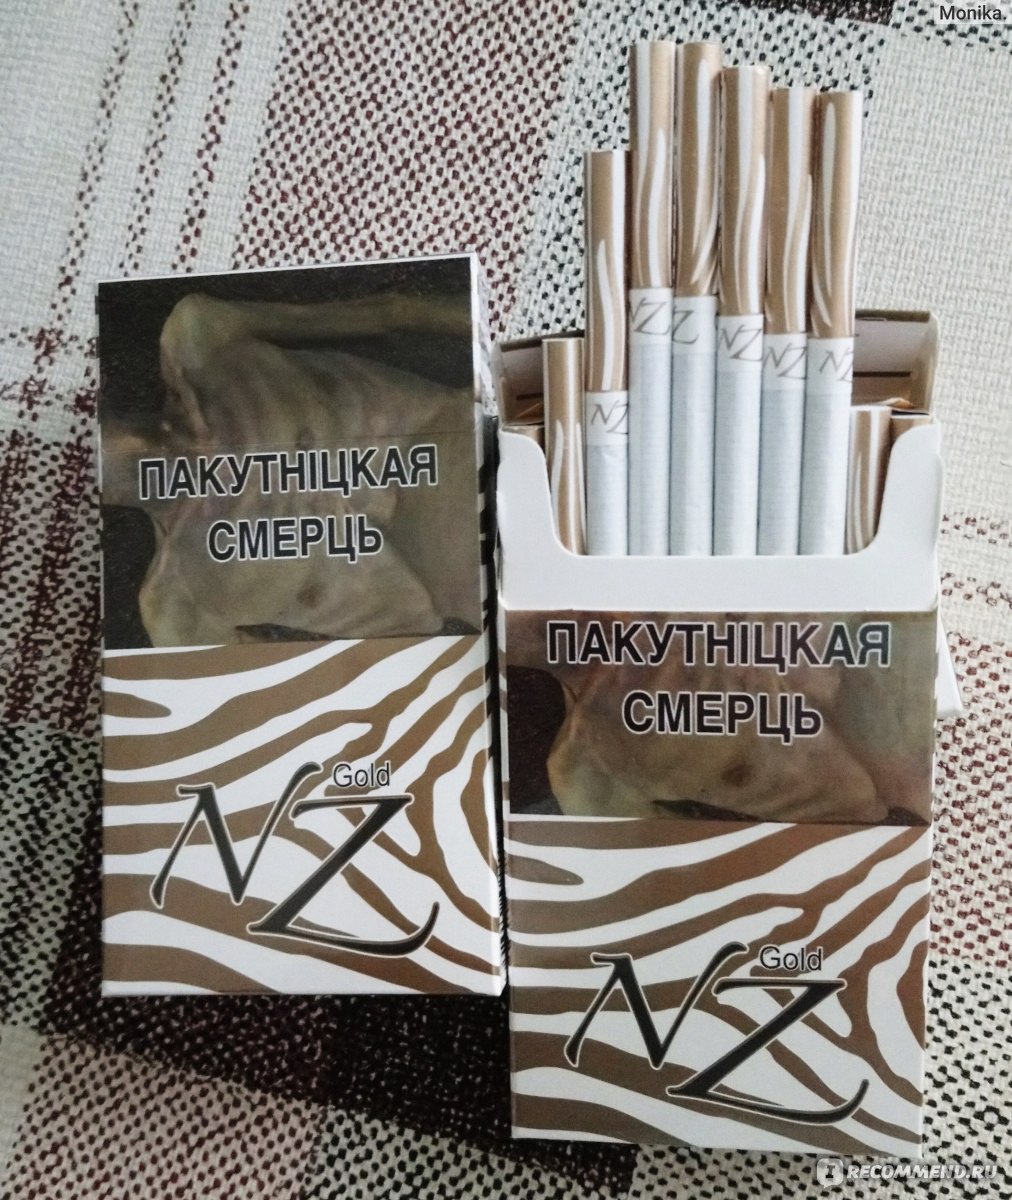 Оптом белорусский и арабский табак - фотография